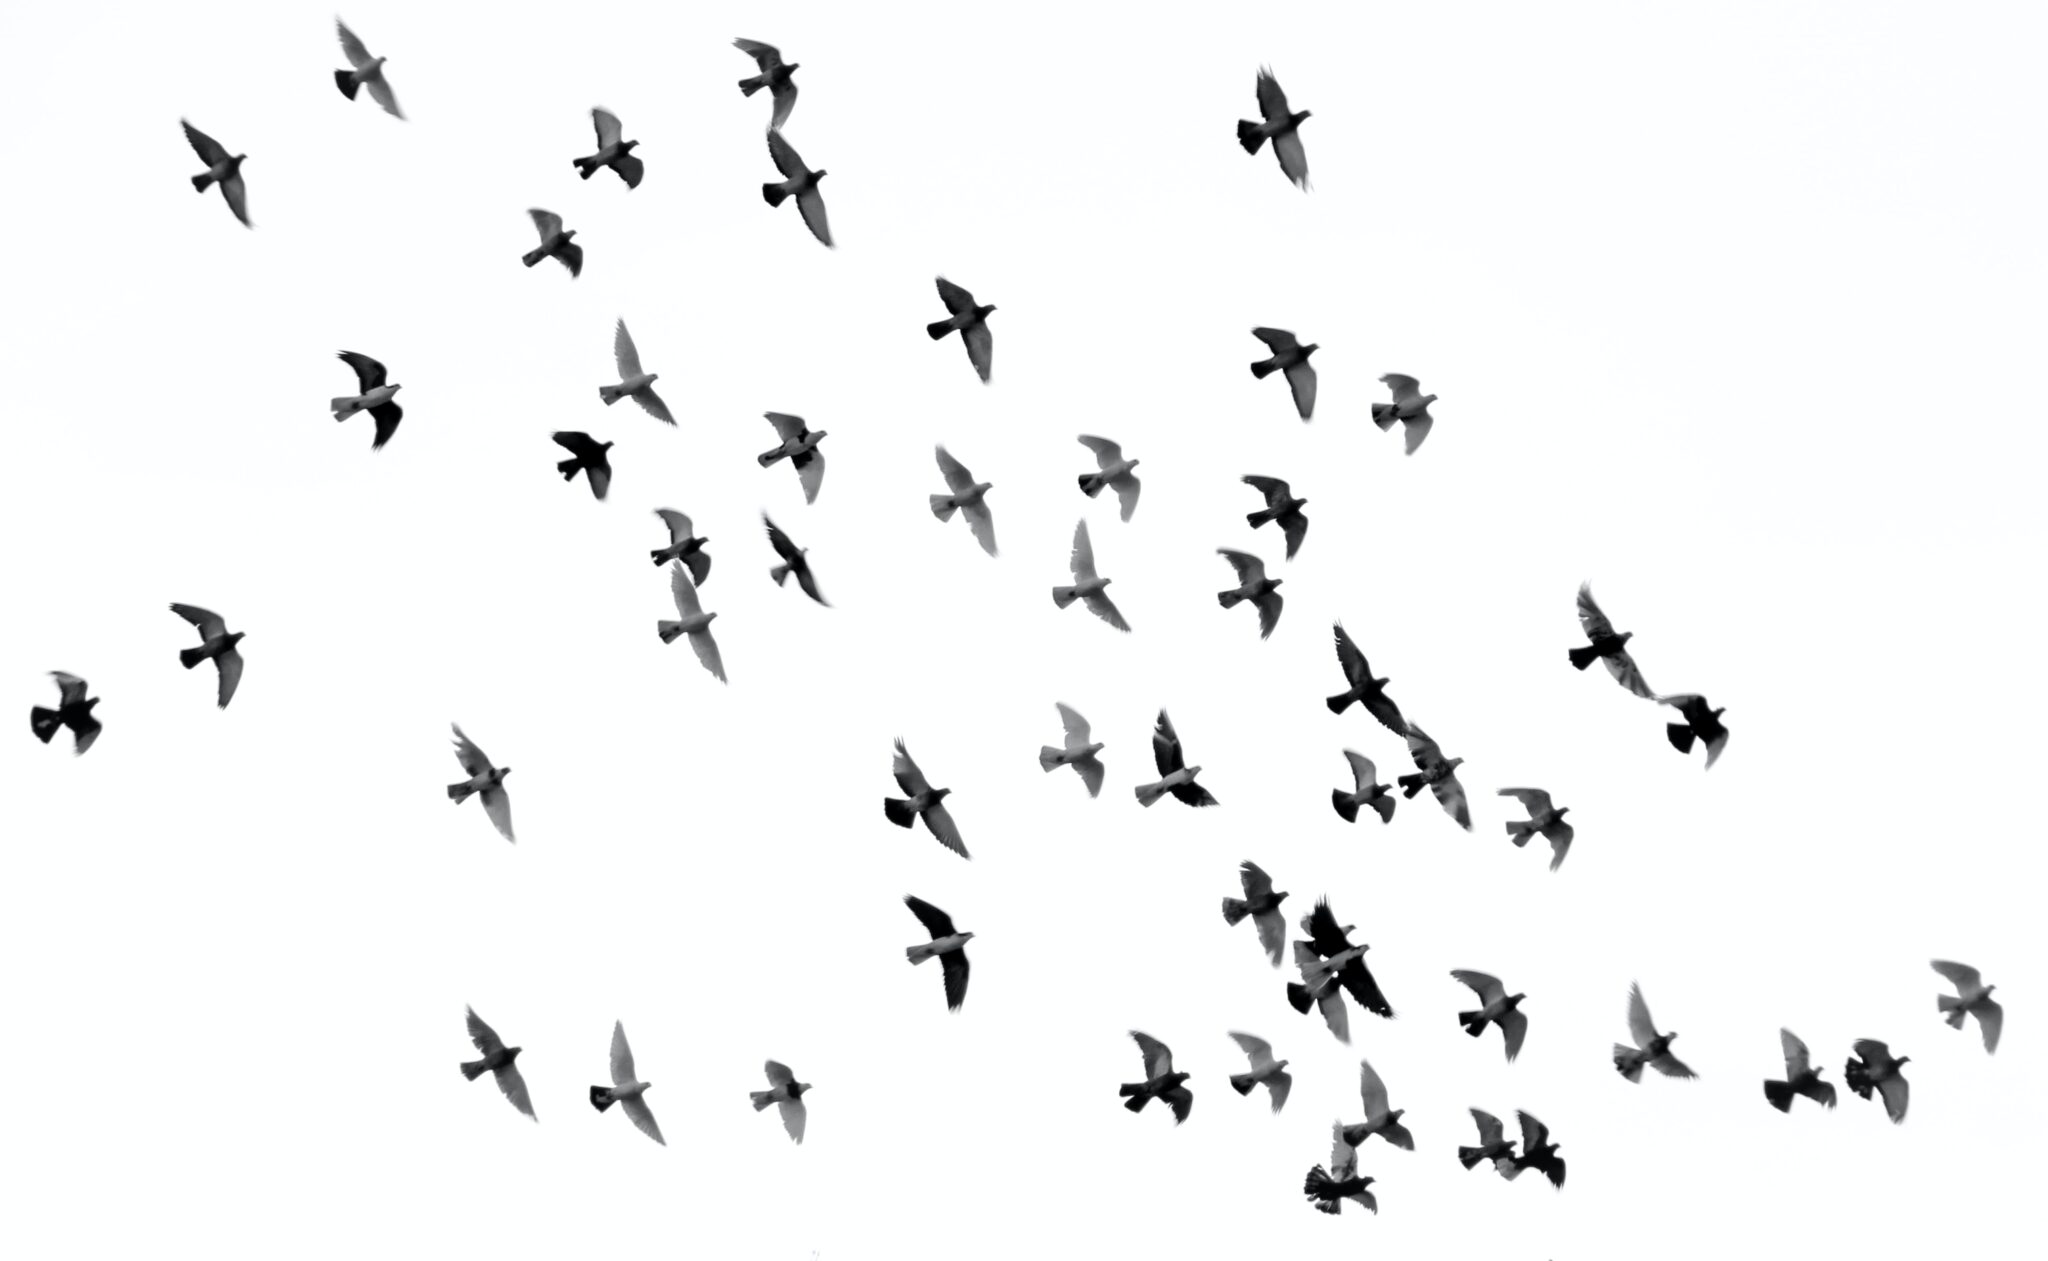 Birds flying together